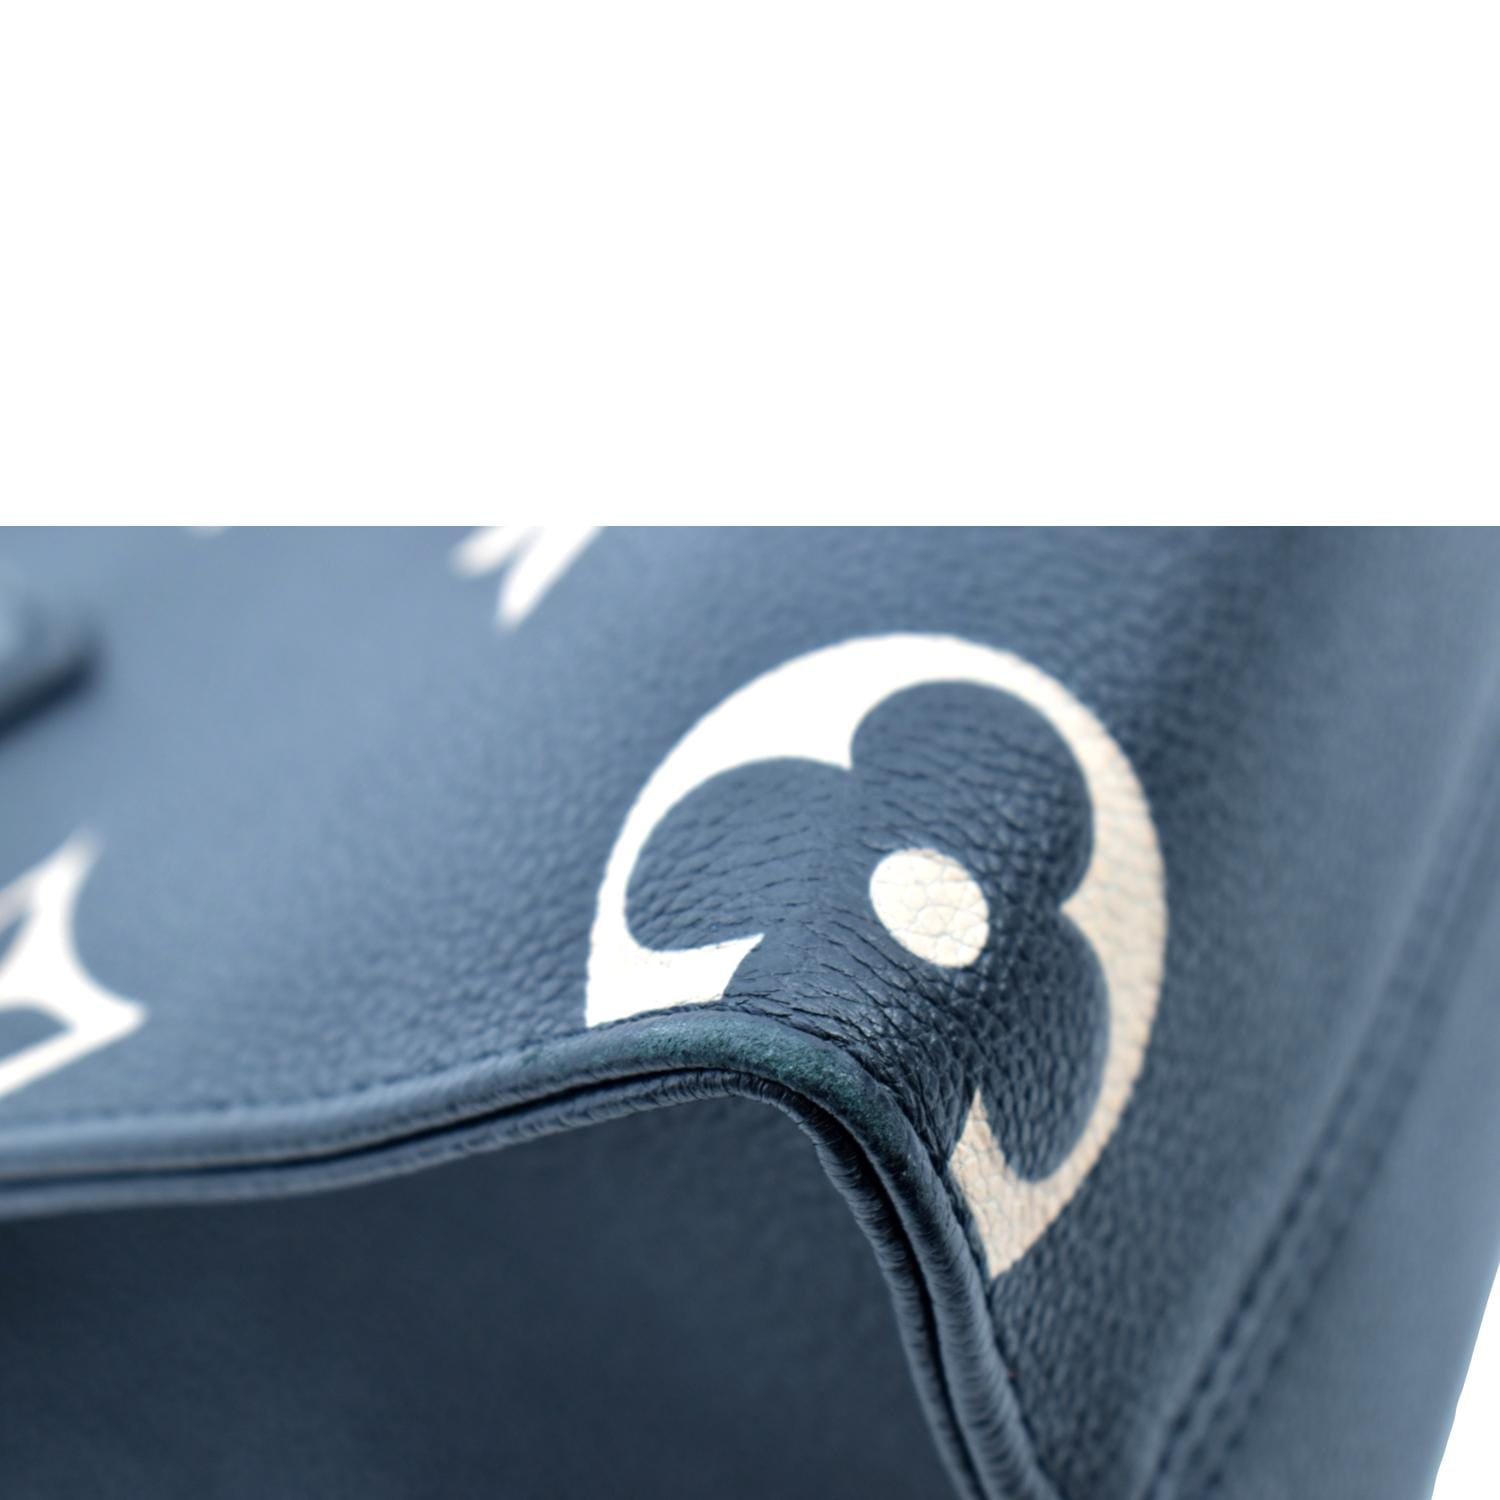 Onthego GM - Bicolour Black Beige - Women - Handbags - Shoulder And Cross  Body Bags - Louis Vuitt… in 2023